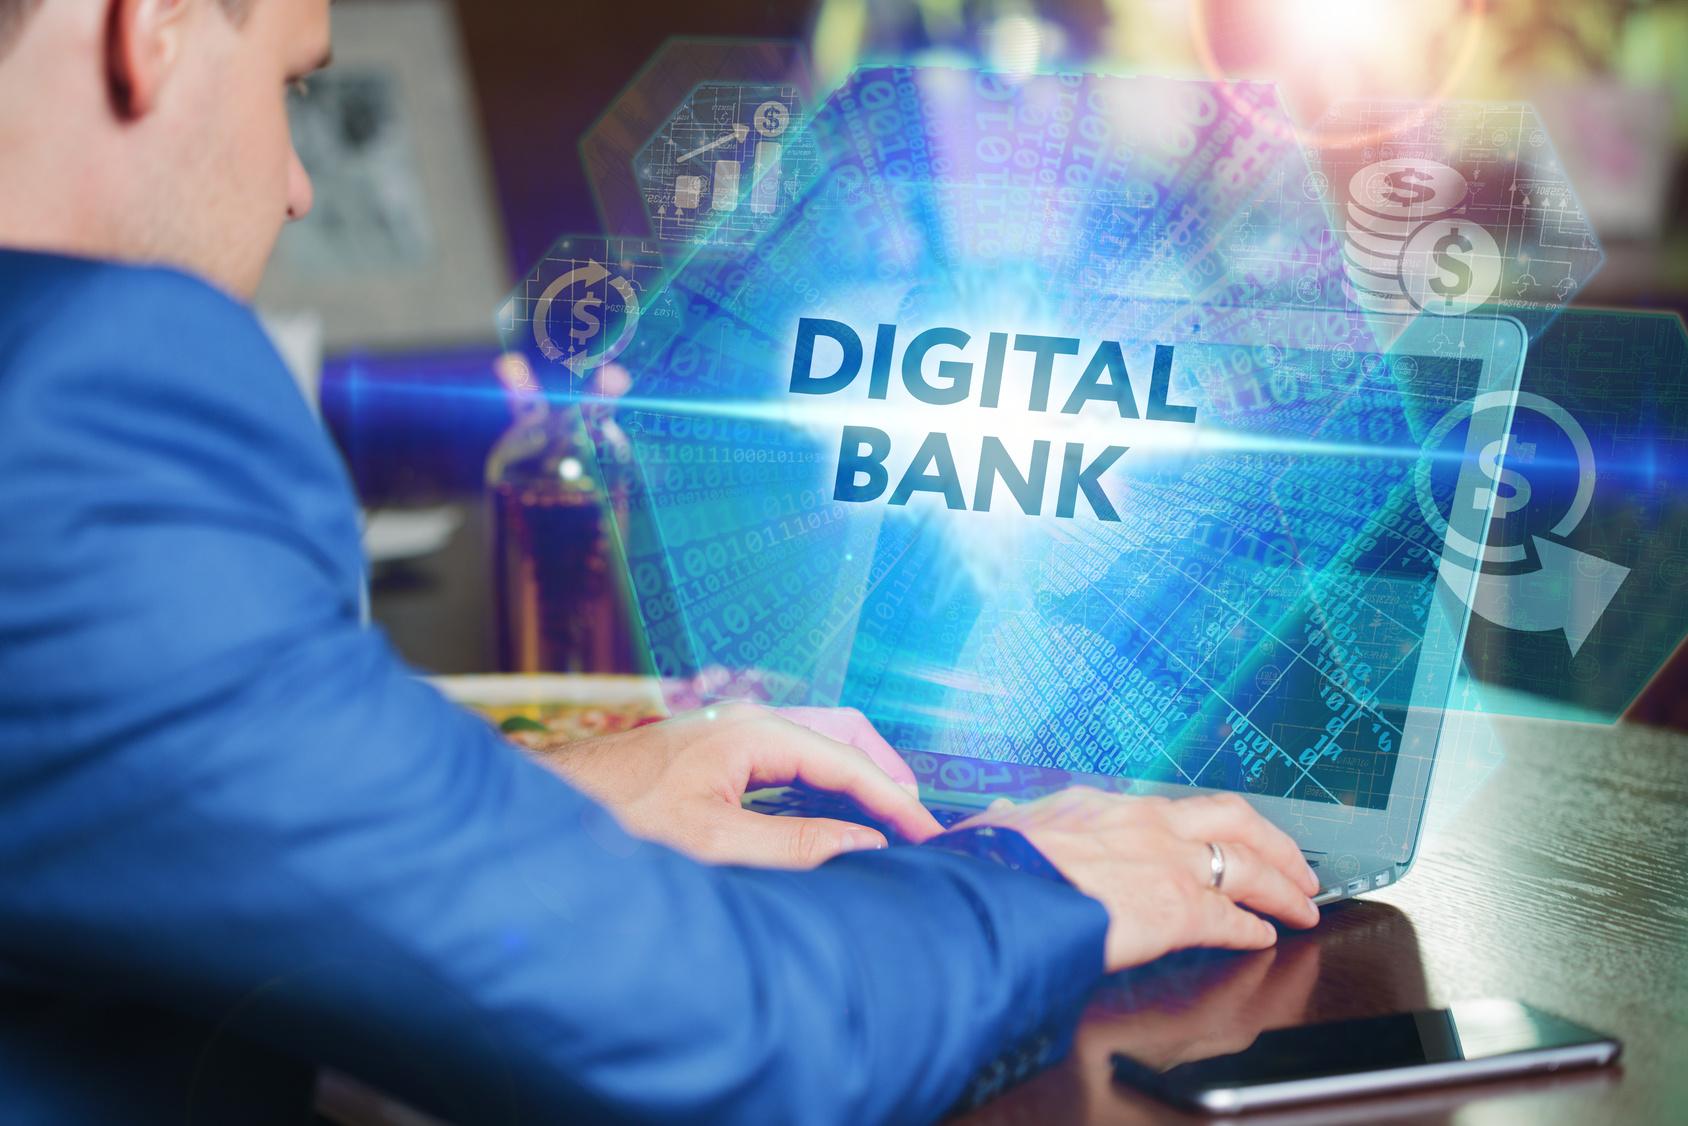 الکساندر لِبِدوف؛سیستم بانکداری دیجیتال راه اندازی میکند